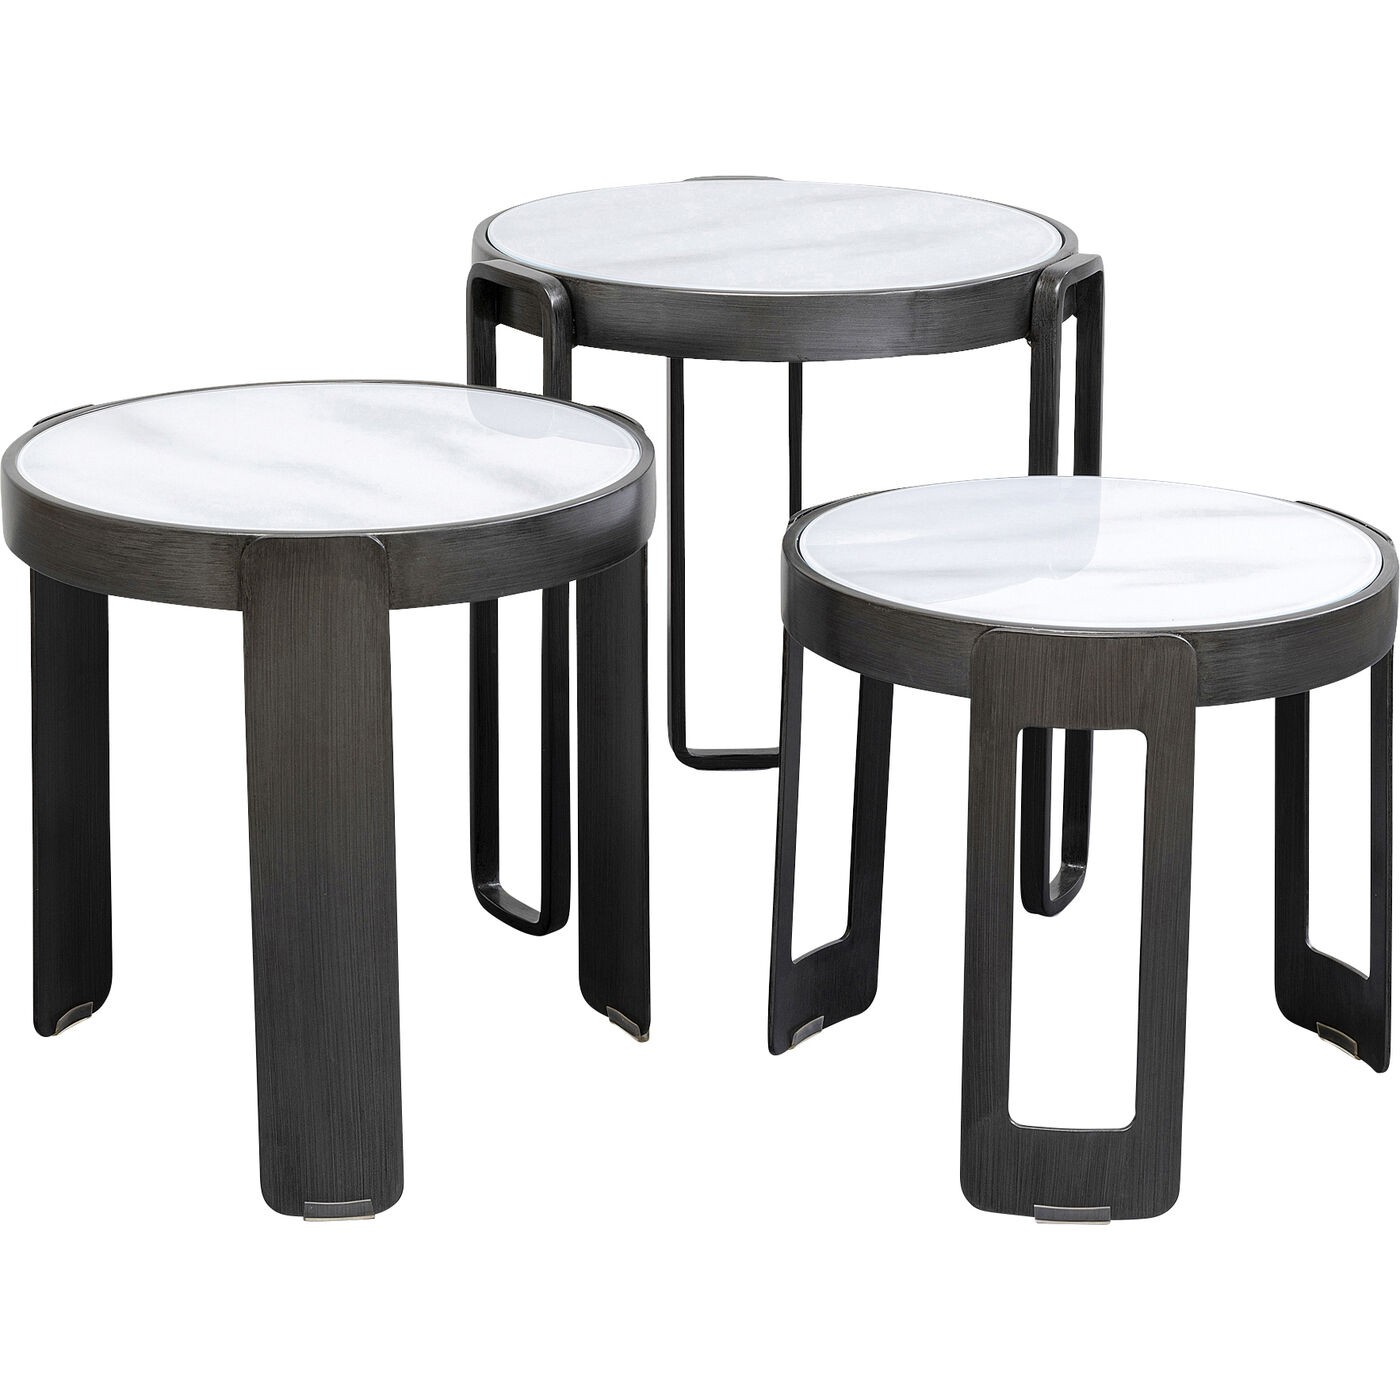 3 tables basses en verre effet marbre blanc et acier noir